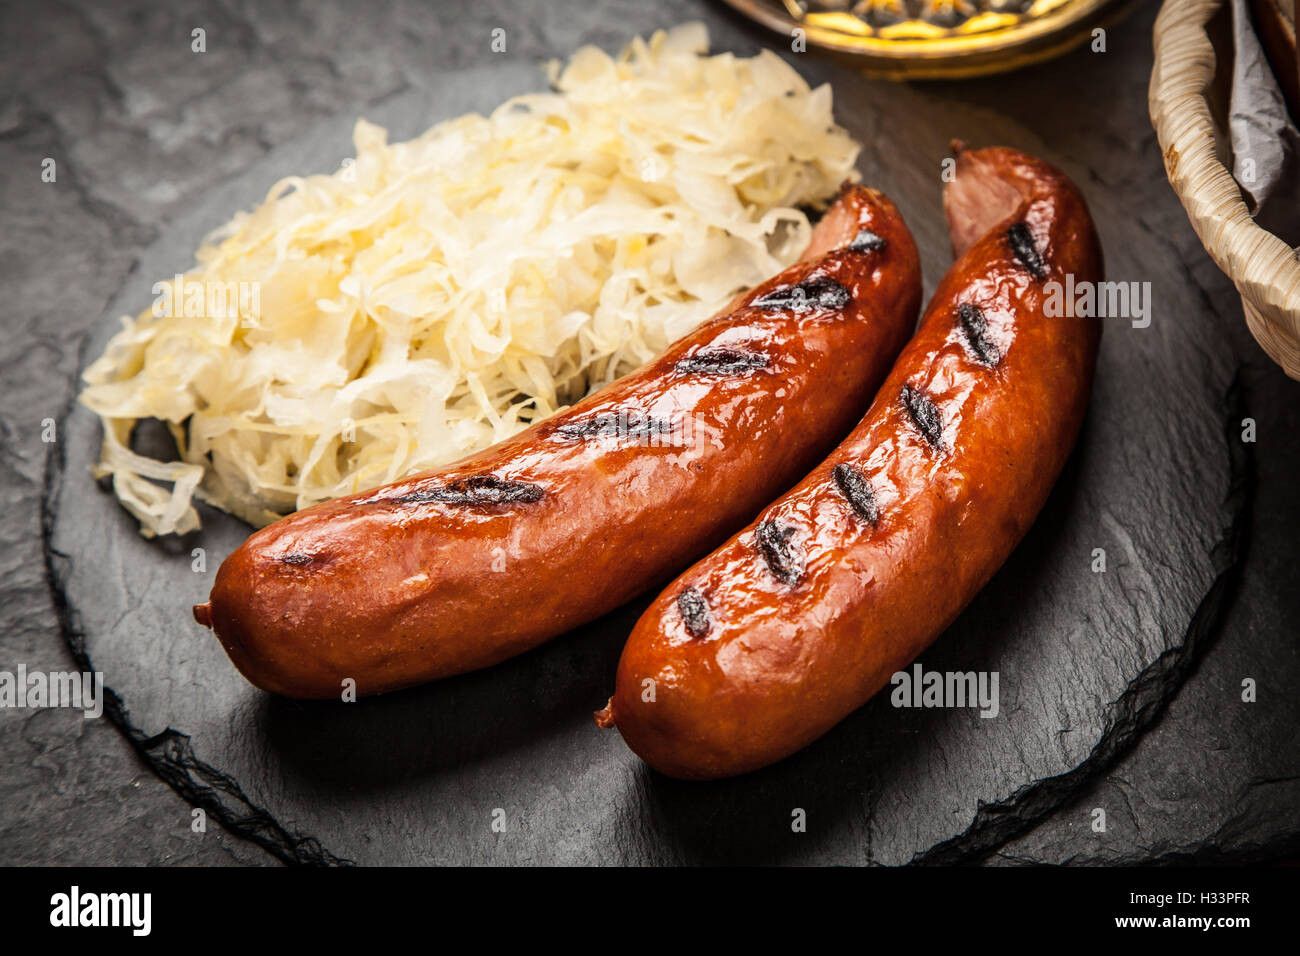 Pretzels, bratwurst and sauerkraut Stock Photo